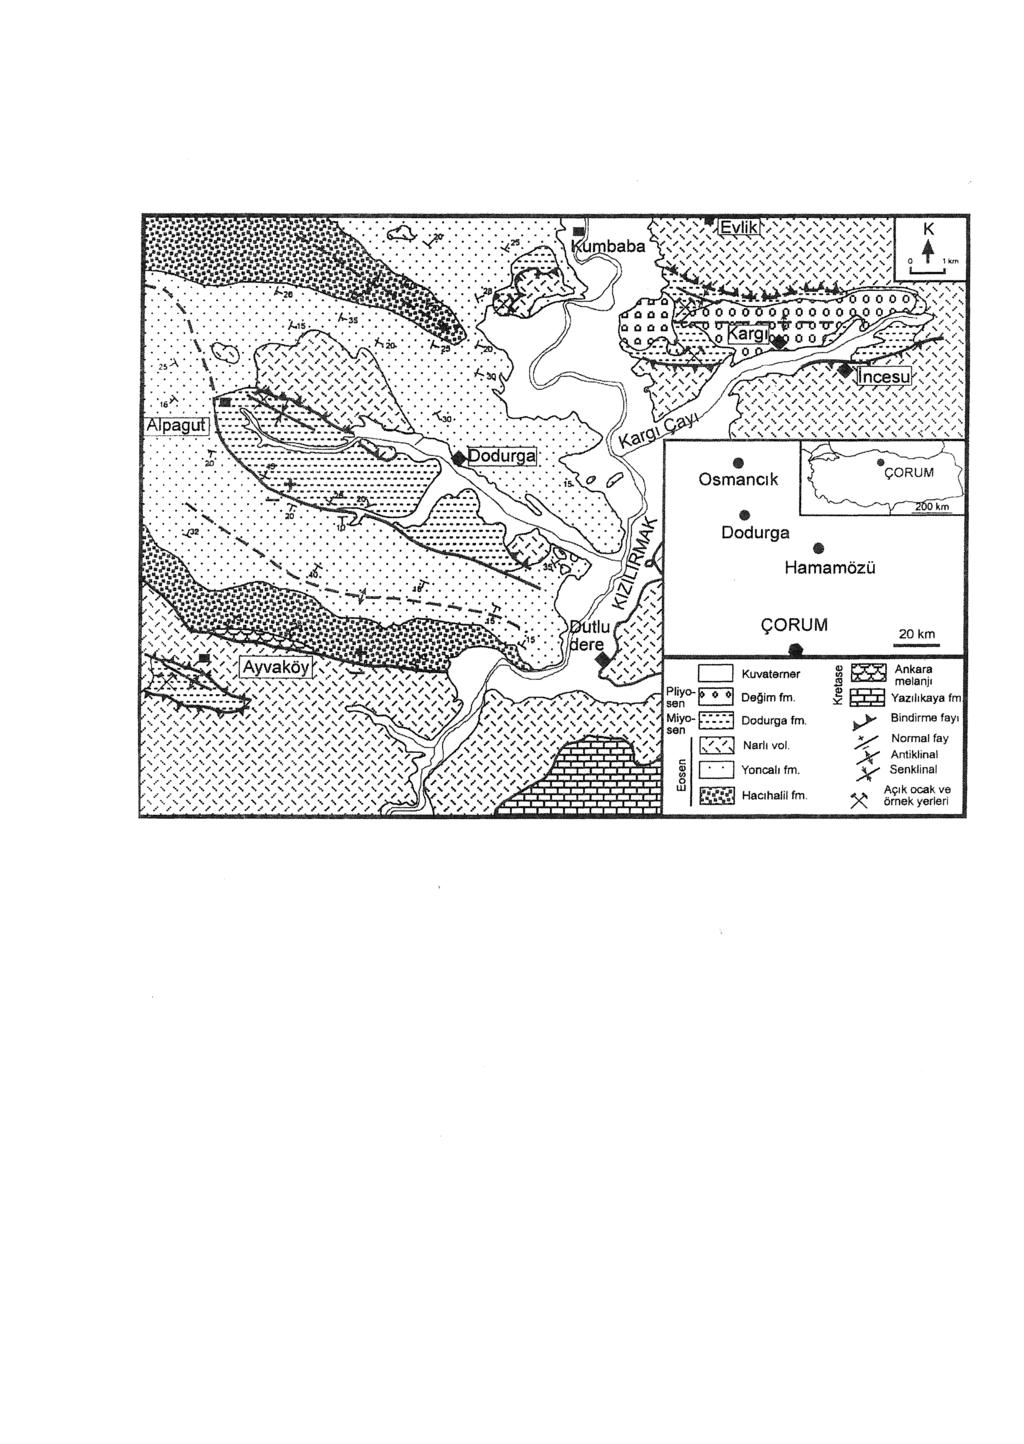 YALÇIN - KARSLI Şekil 1. Dodurga çevresinin yerbuldum ve jeoloji haritası (Karslı, 1996). Figure I. Location and geology map of Dodurga region (Karslı, 1996).